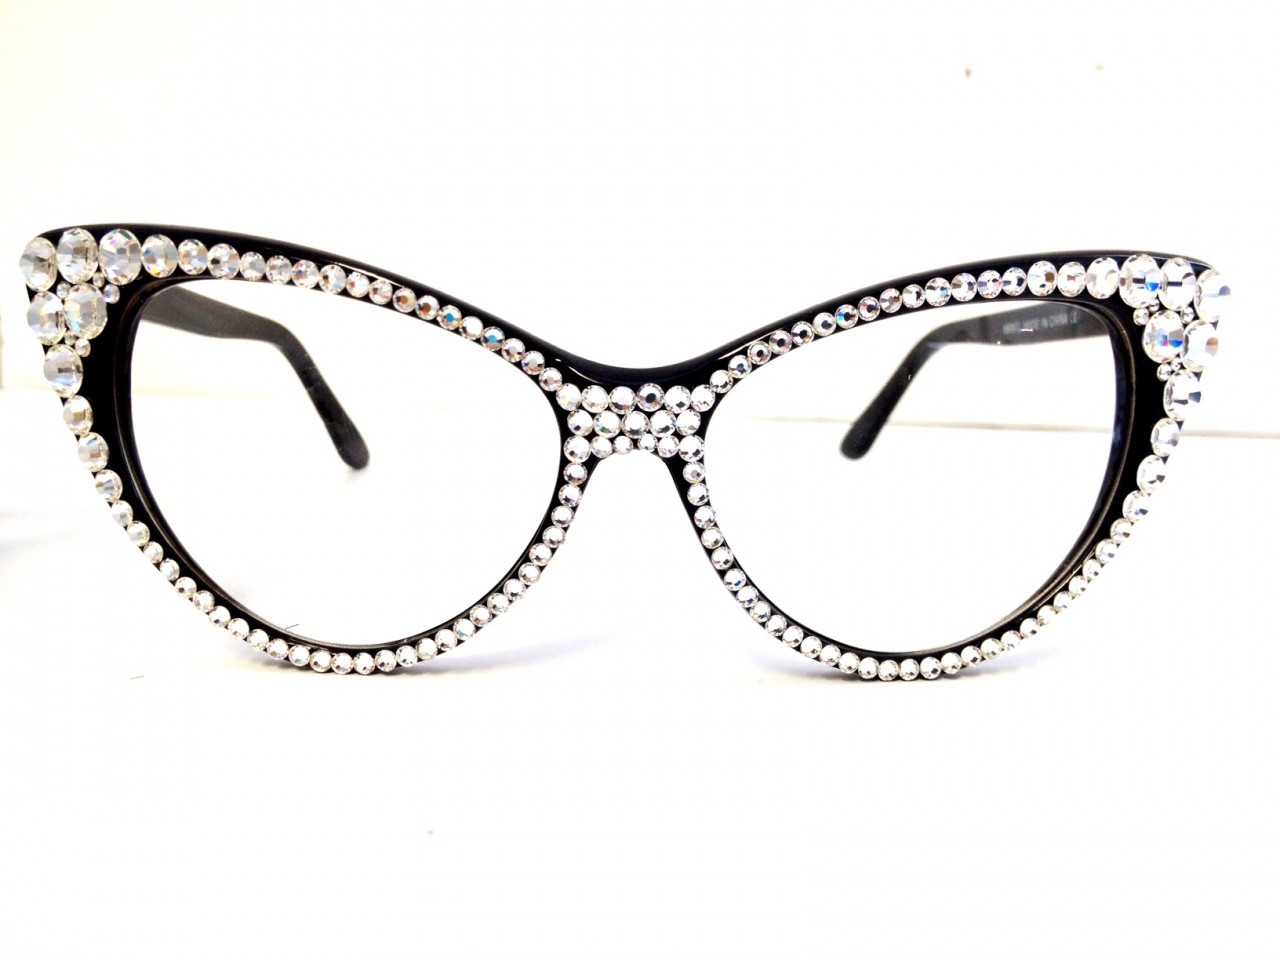 Cat-Eye Glasses